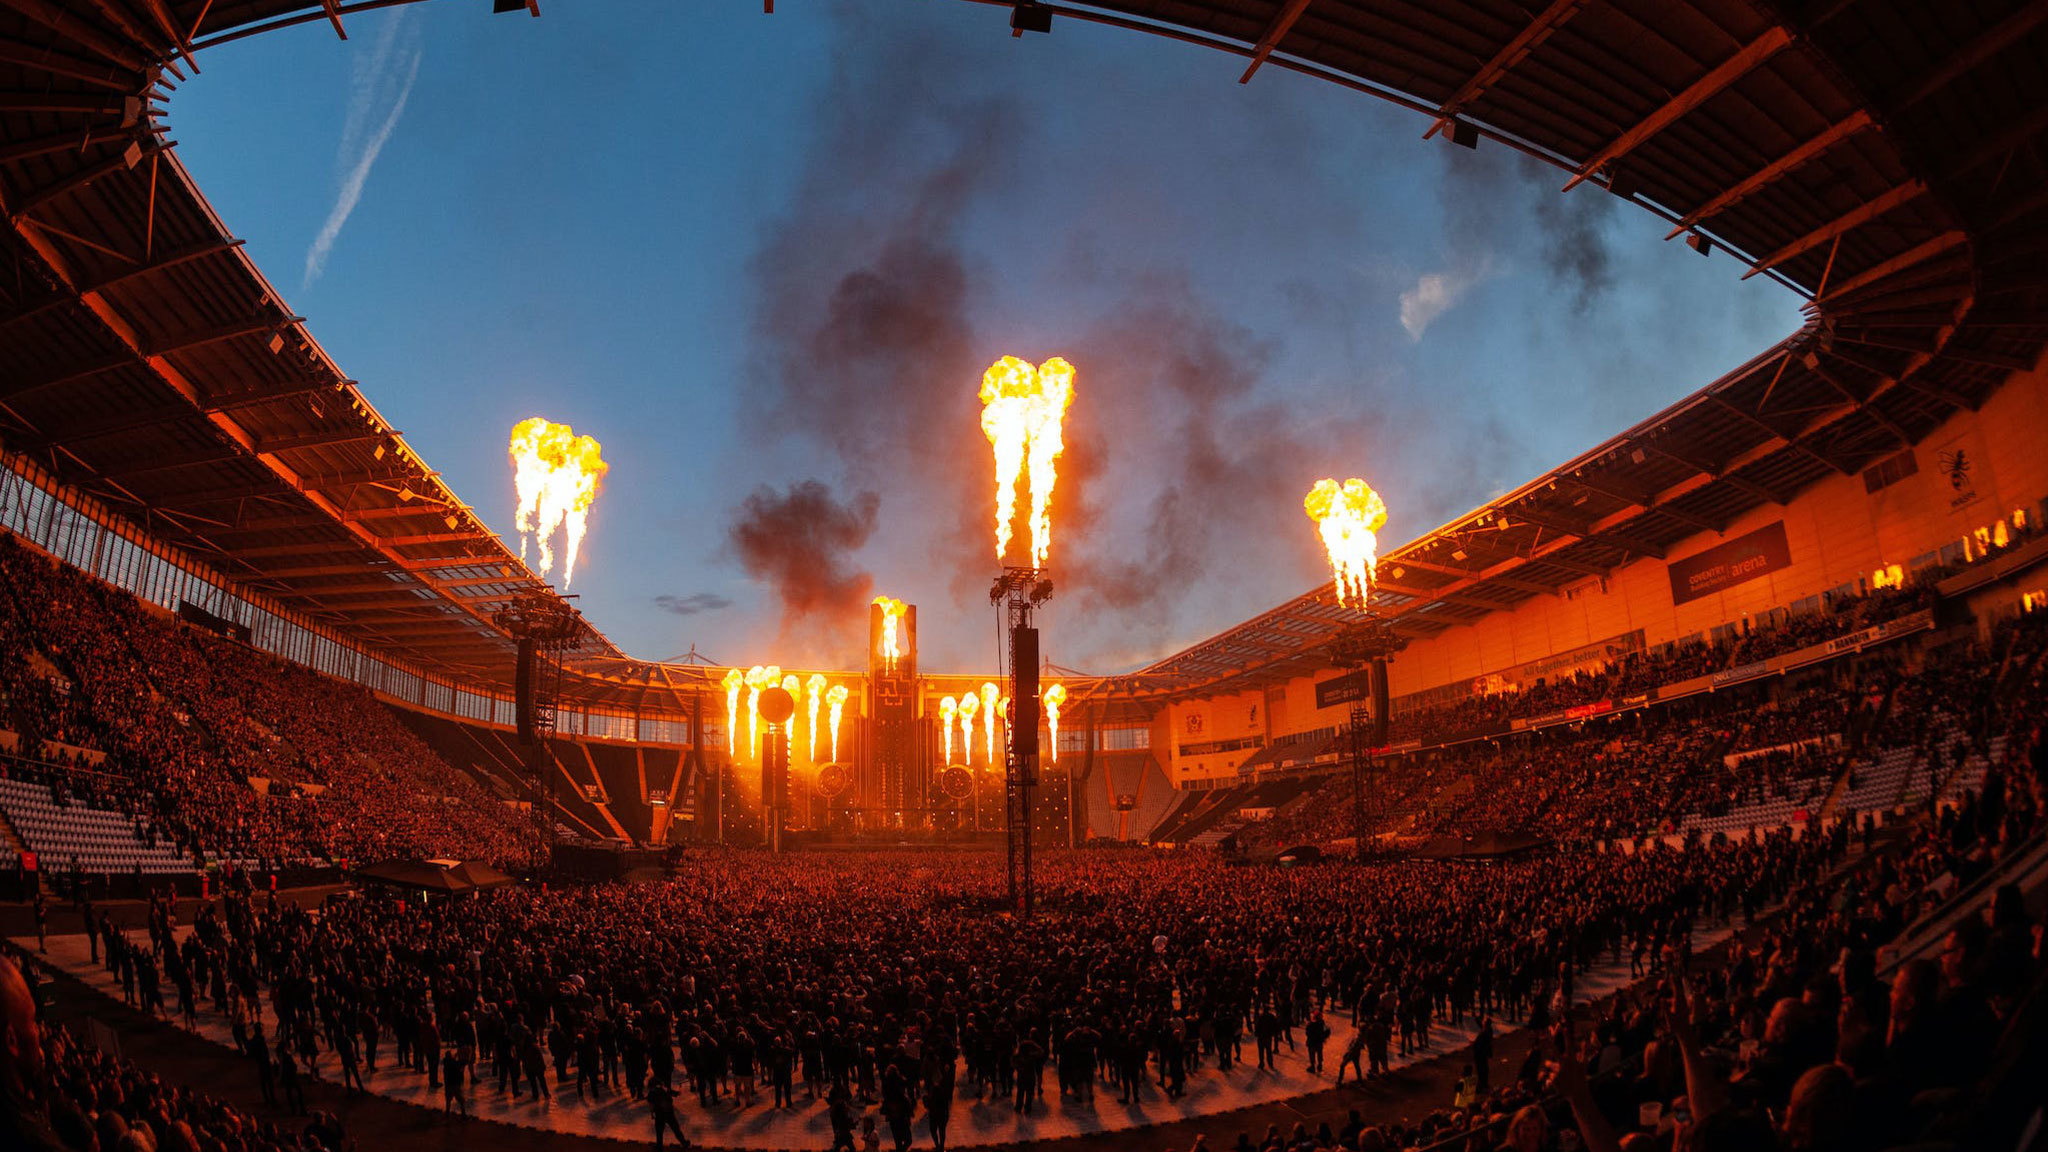 Rammstein Tourneedaten 2024 2025. Rammstein Tickets und Konzerte  unterschleissheim ;)